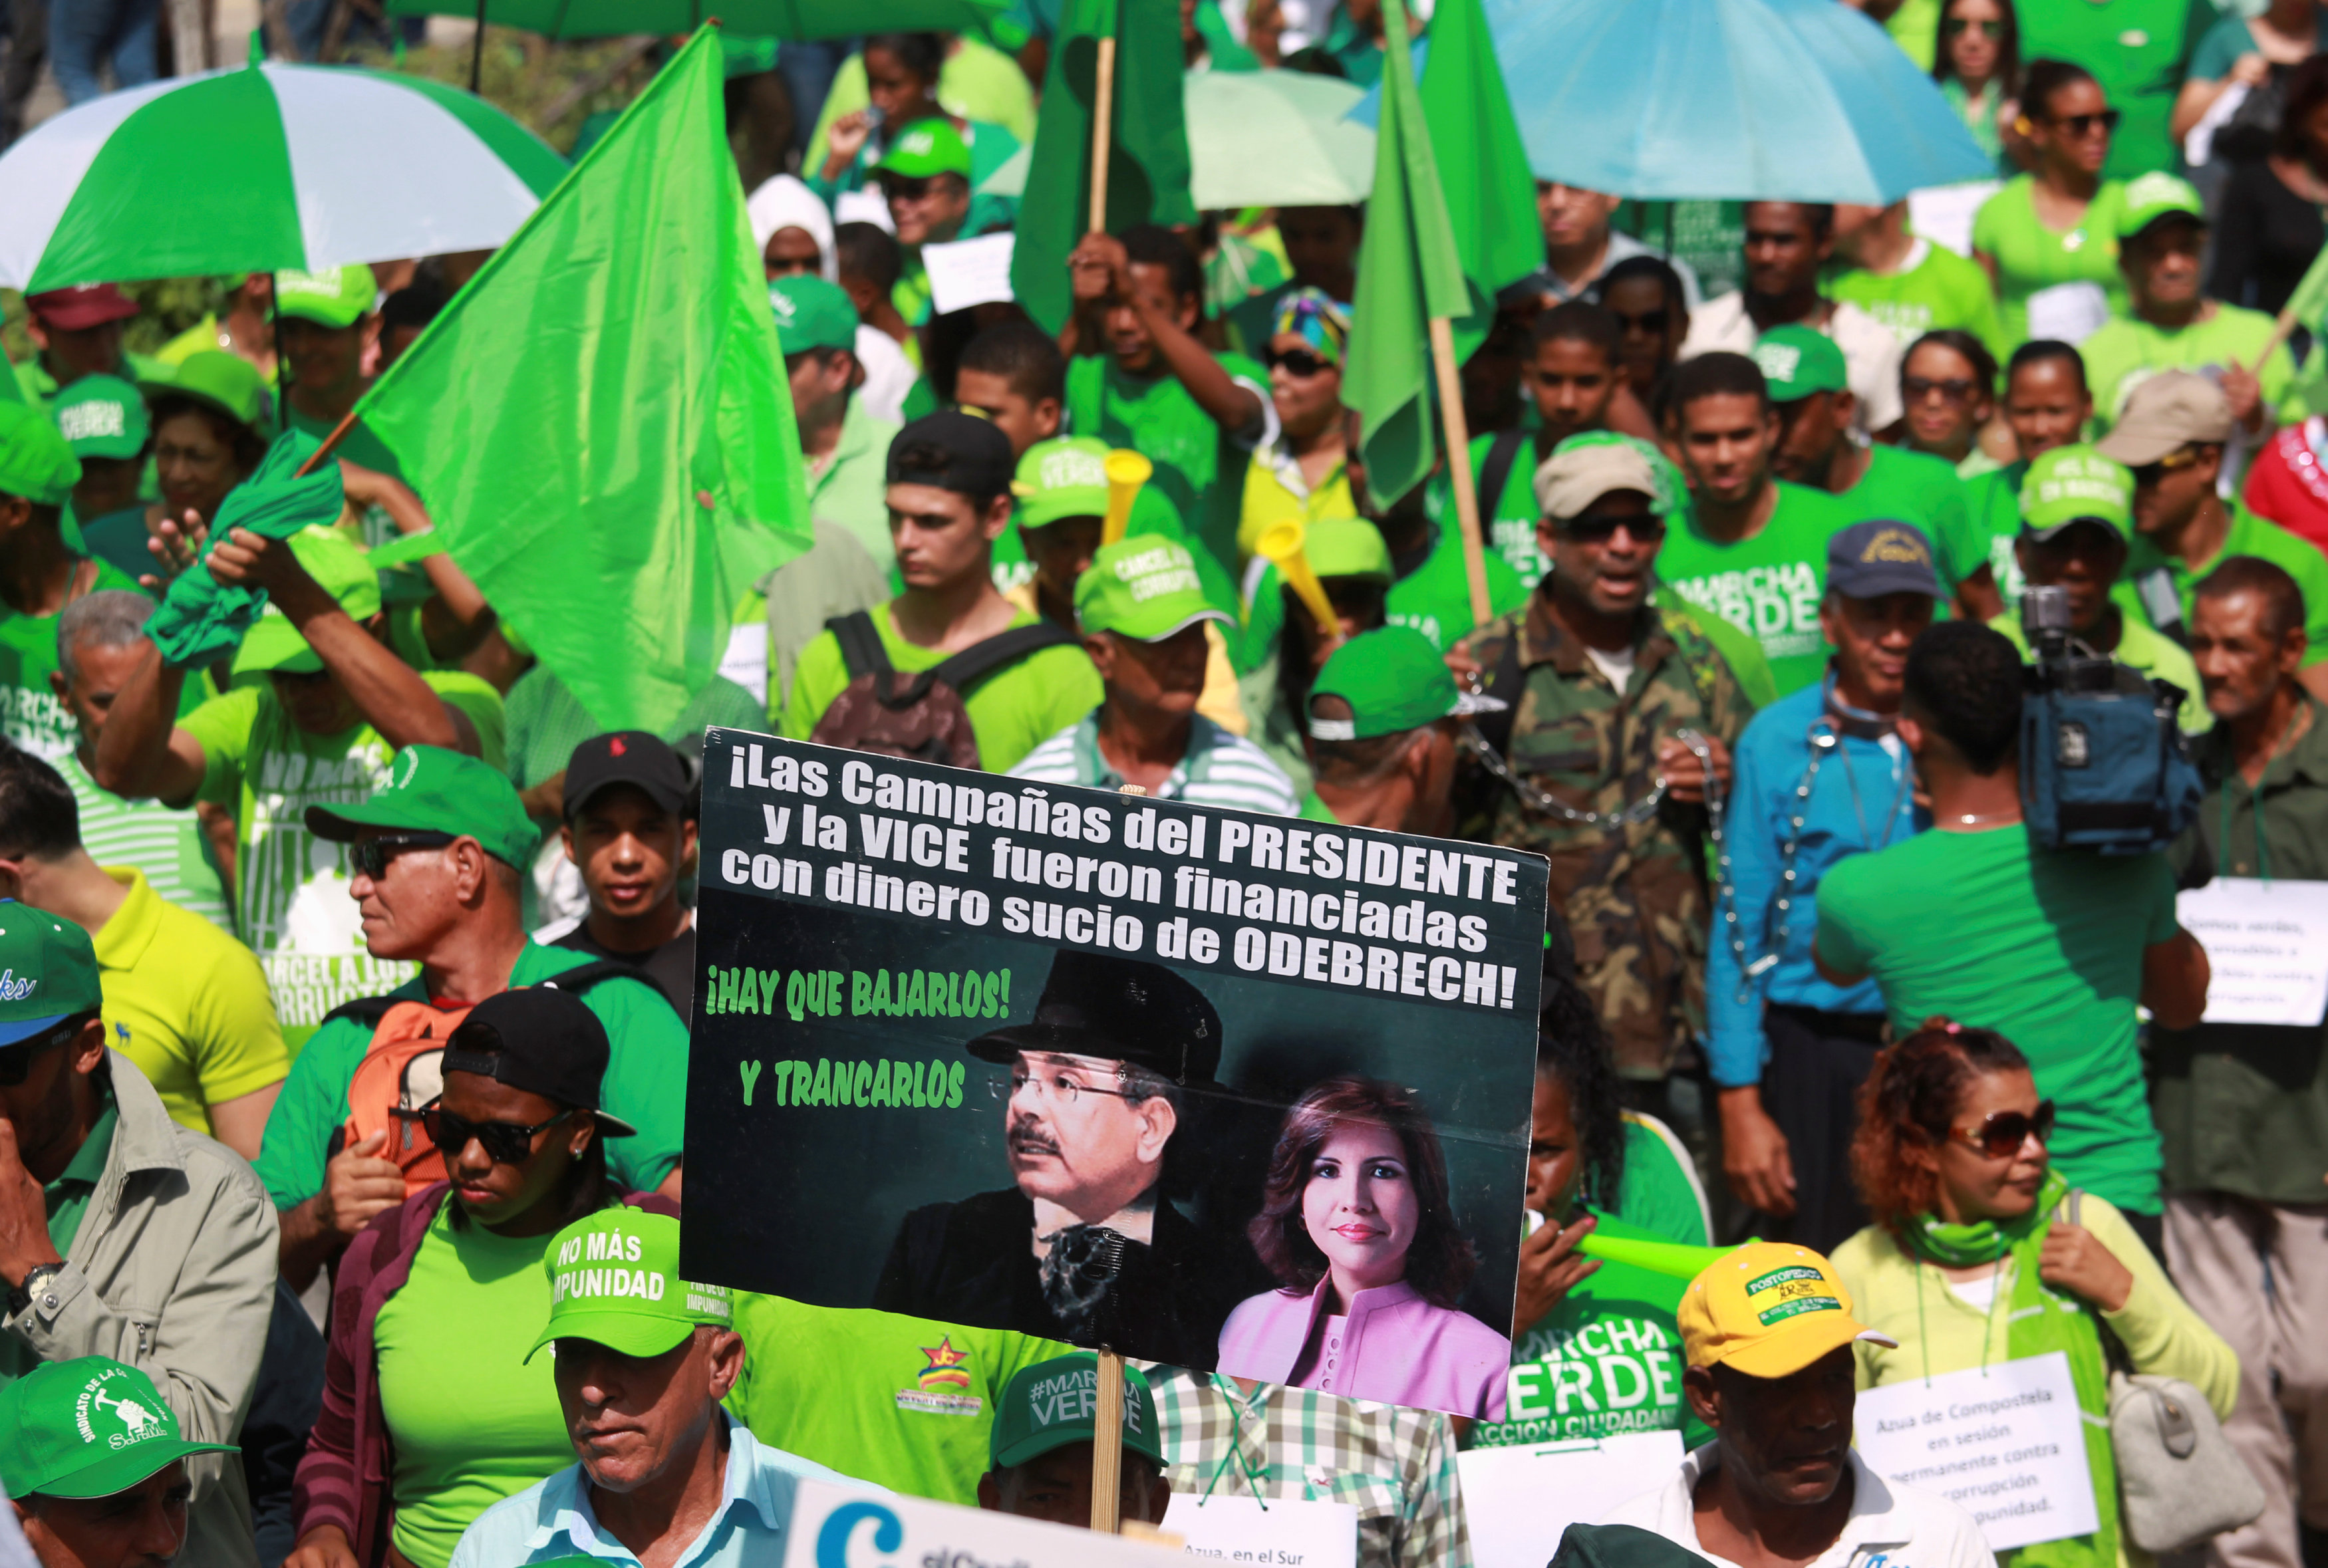 الاحزاب البرازيلية تتظاهر ضد الرئيس ميشيل تامر